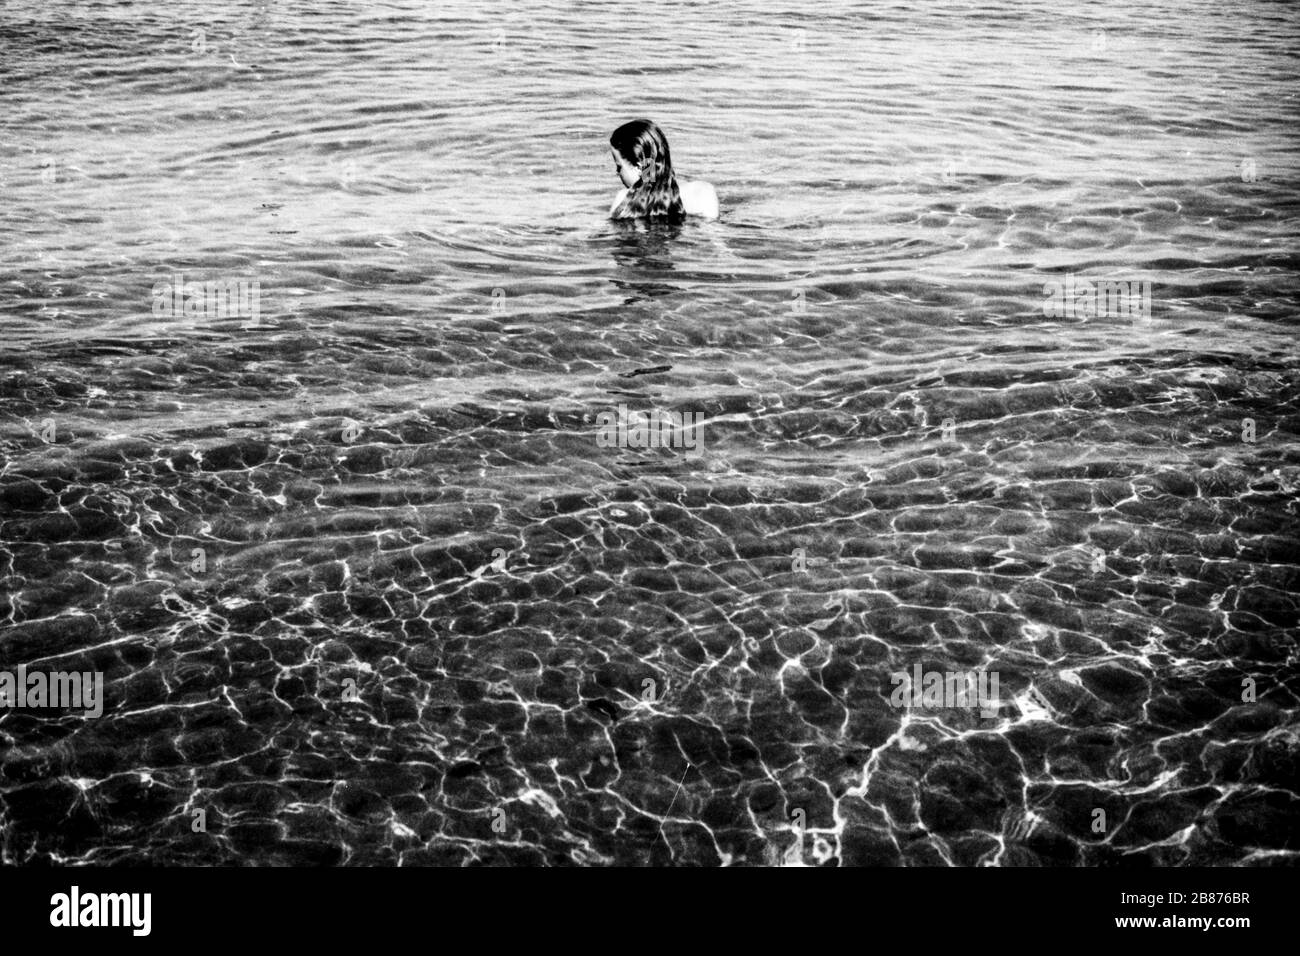 giovane donna rilassante in acque calme Foto Stock